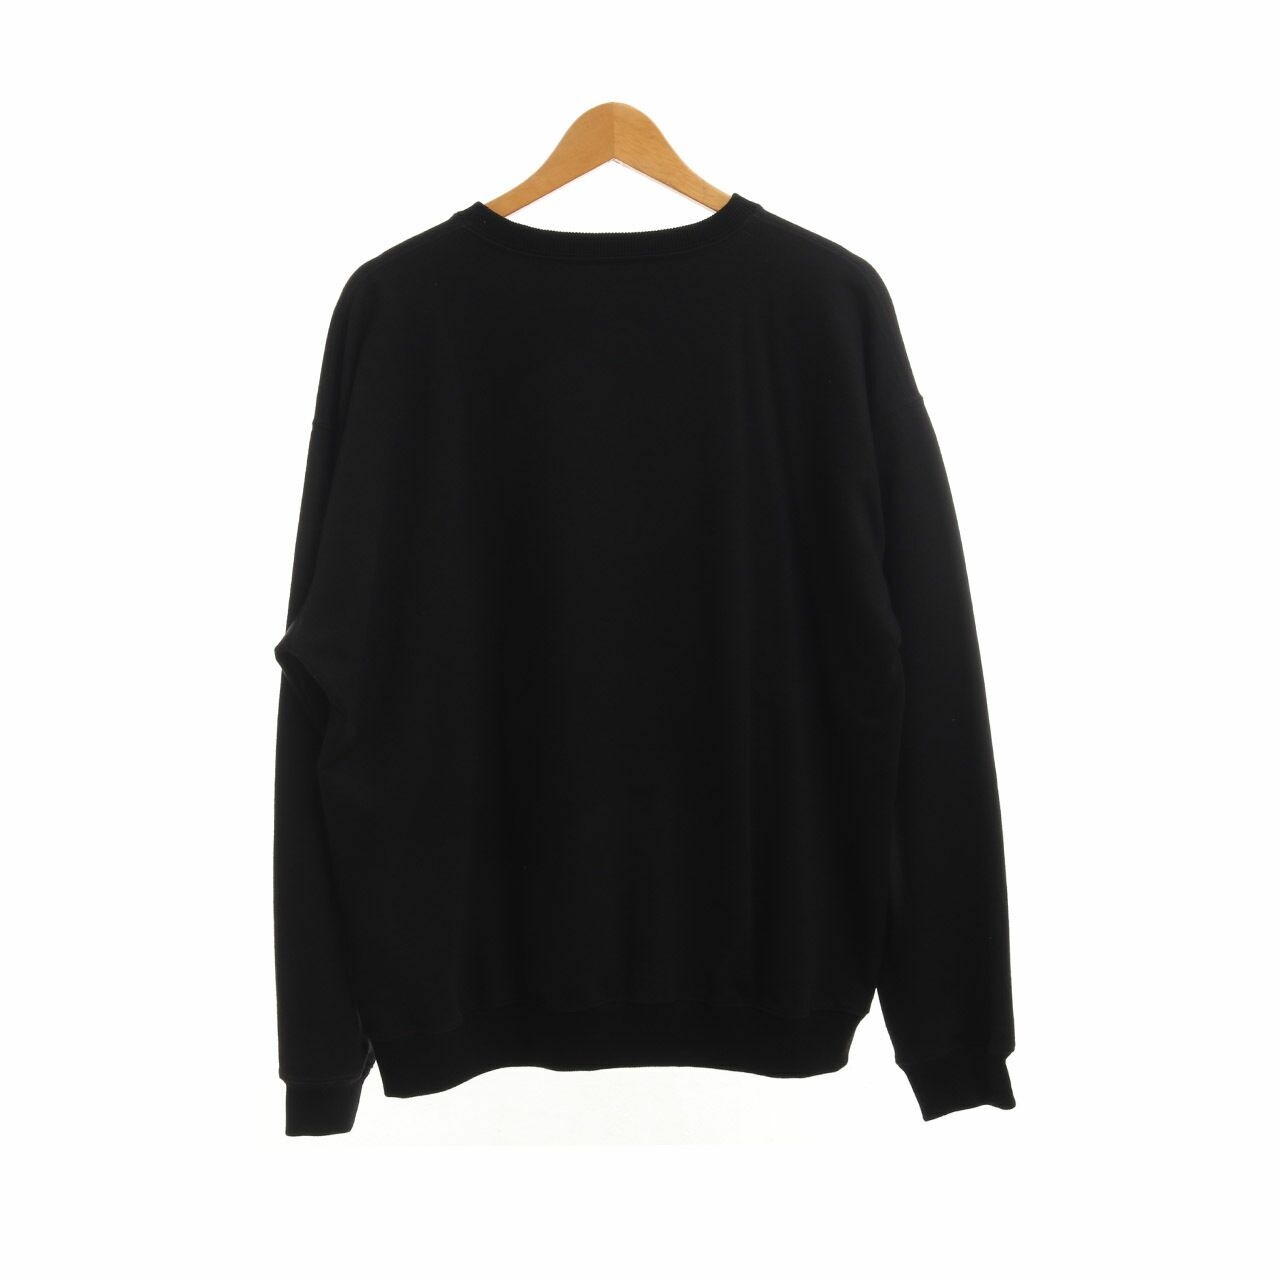 Tities Sapoetra Black Sweater